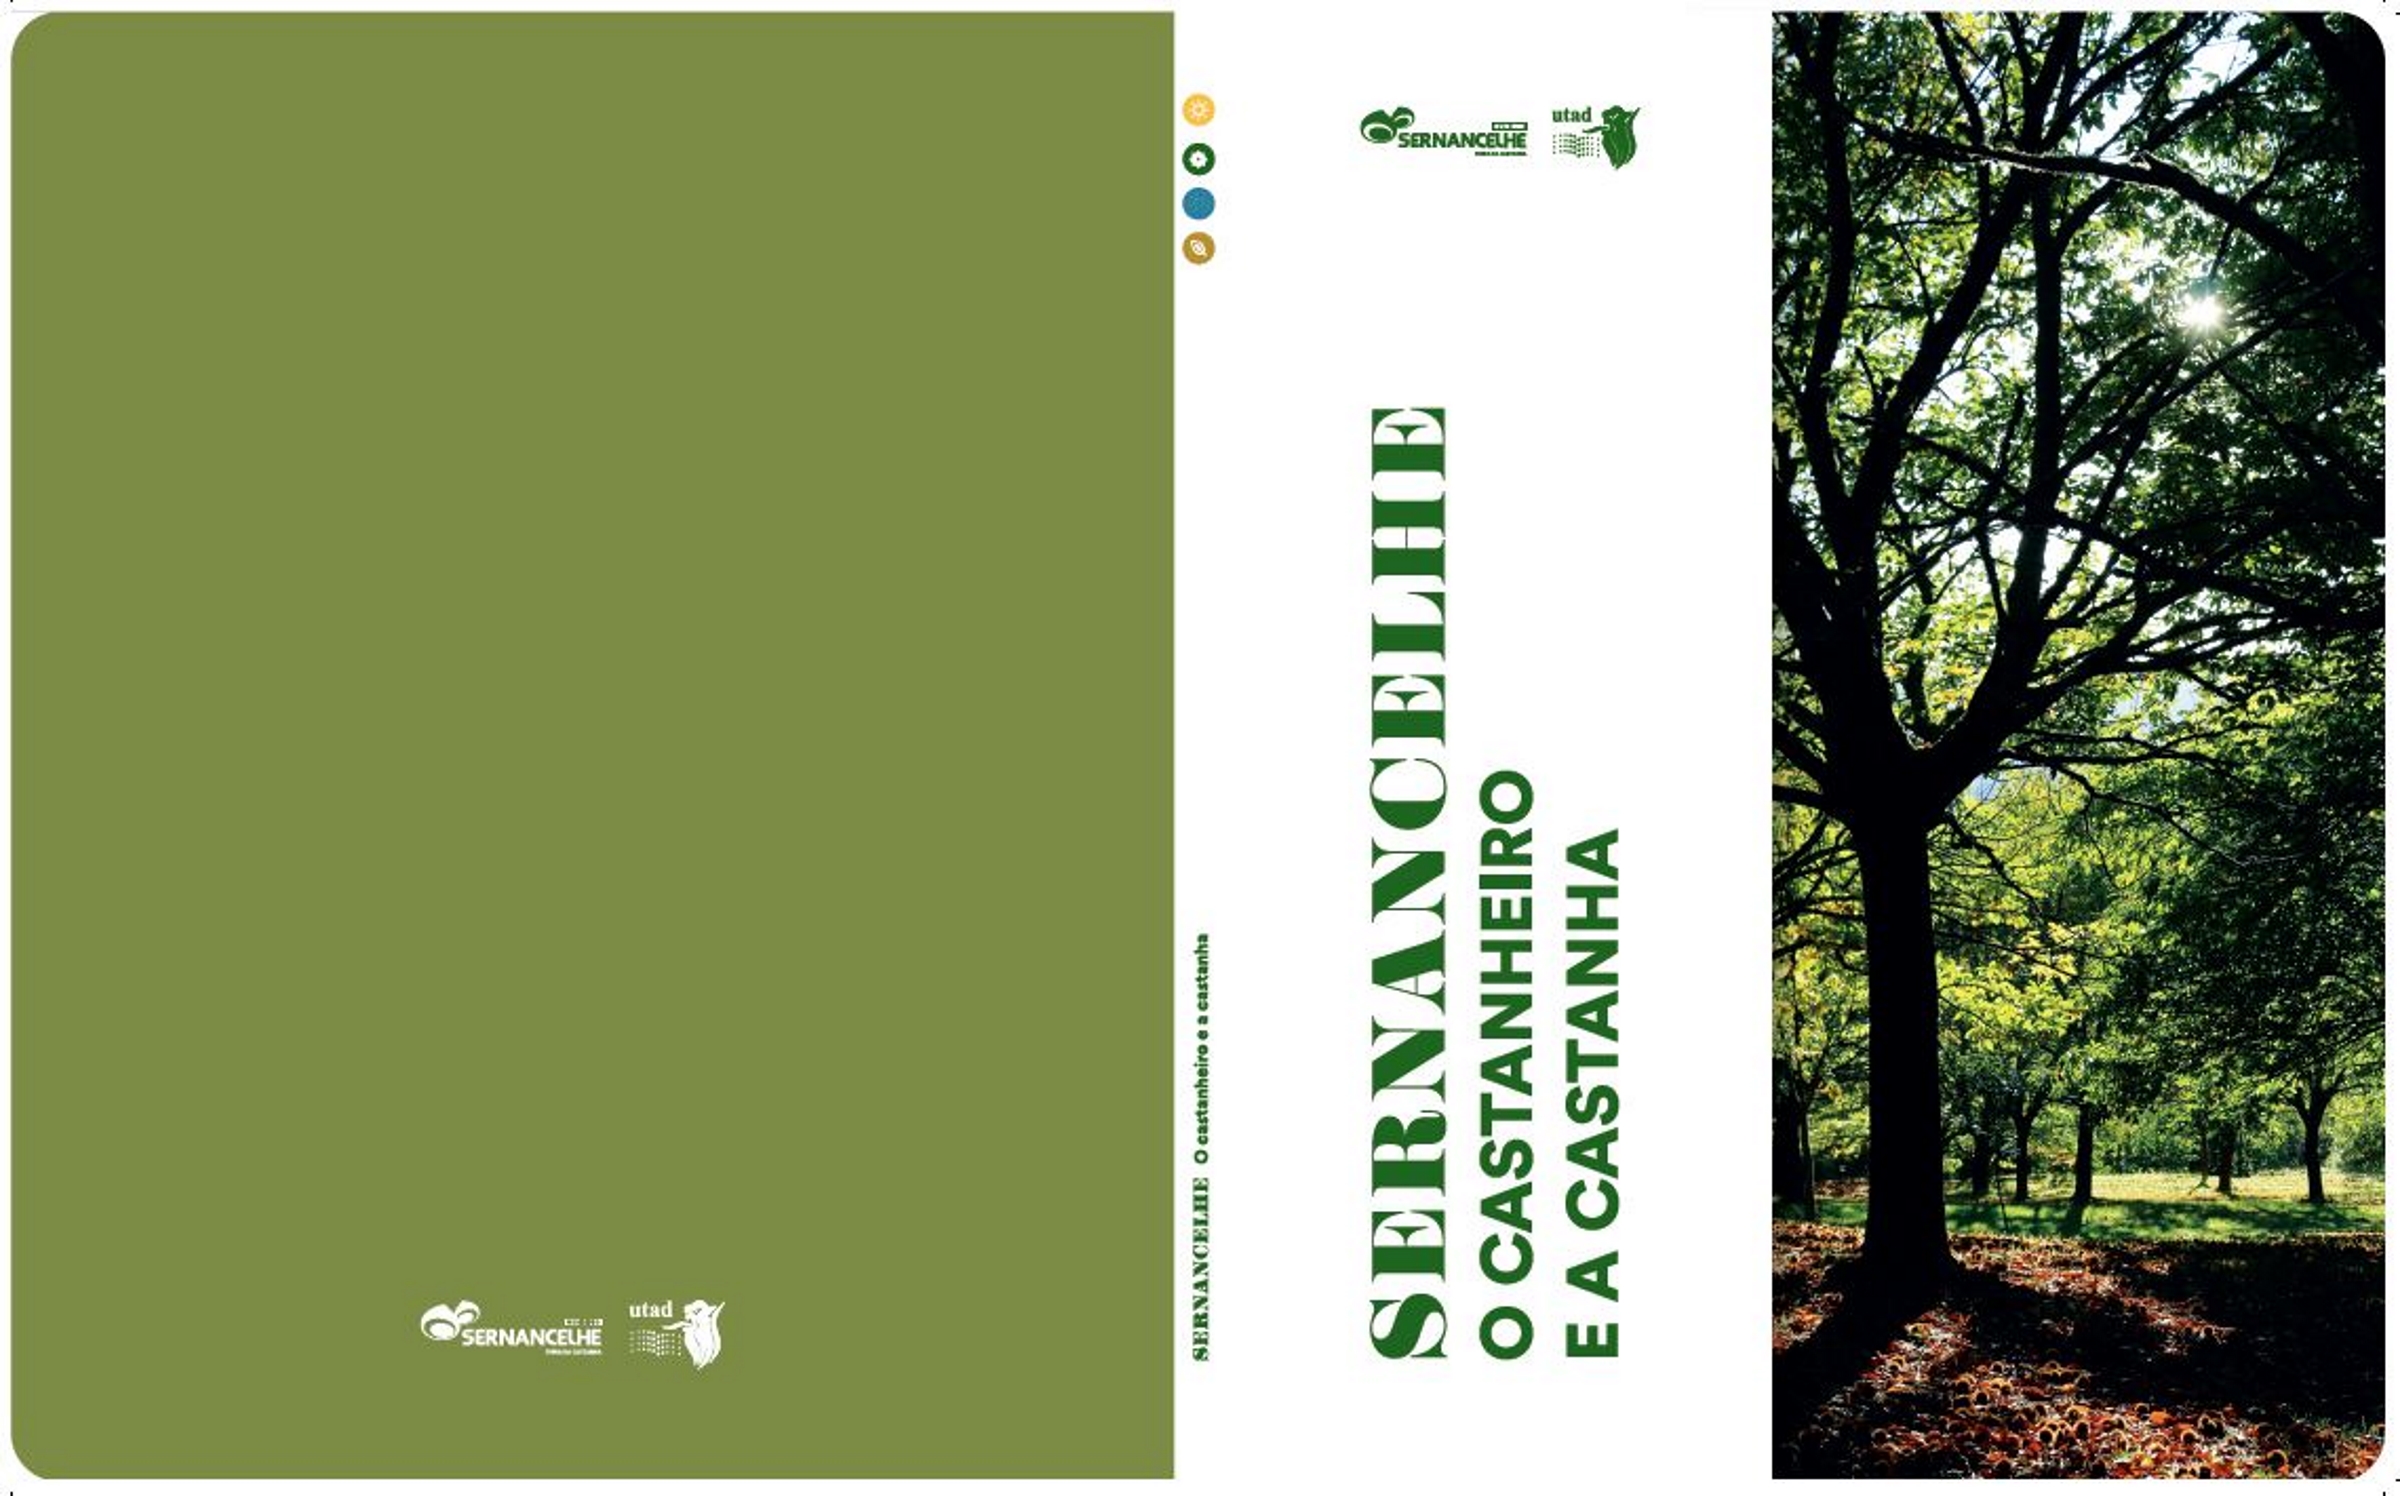 Município de Sernancelhe e UTAD criam Manual de boas práticas do Castanheiro e da Castanha